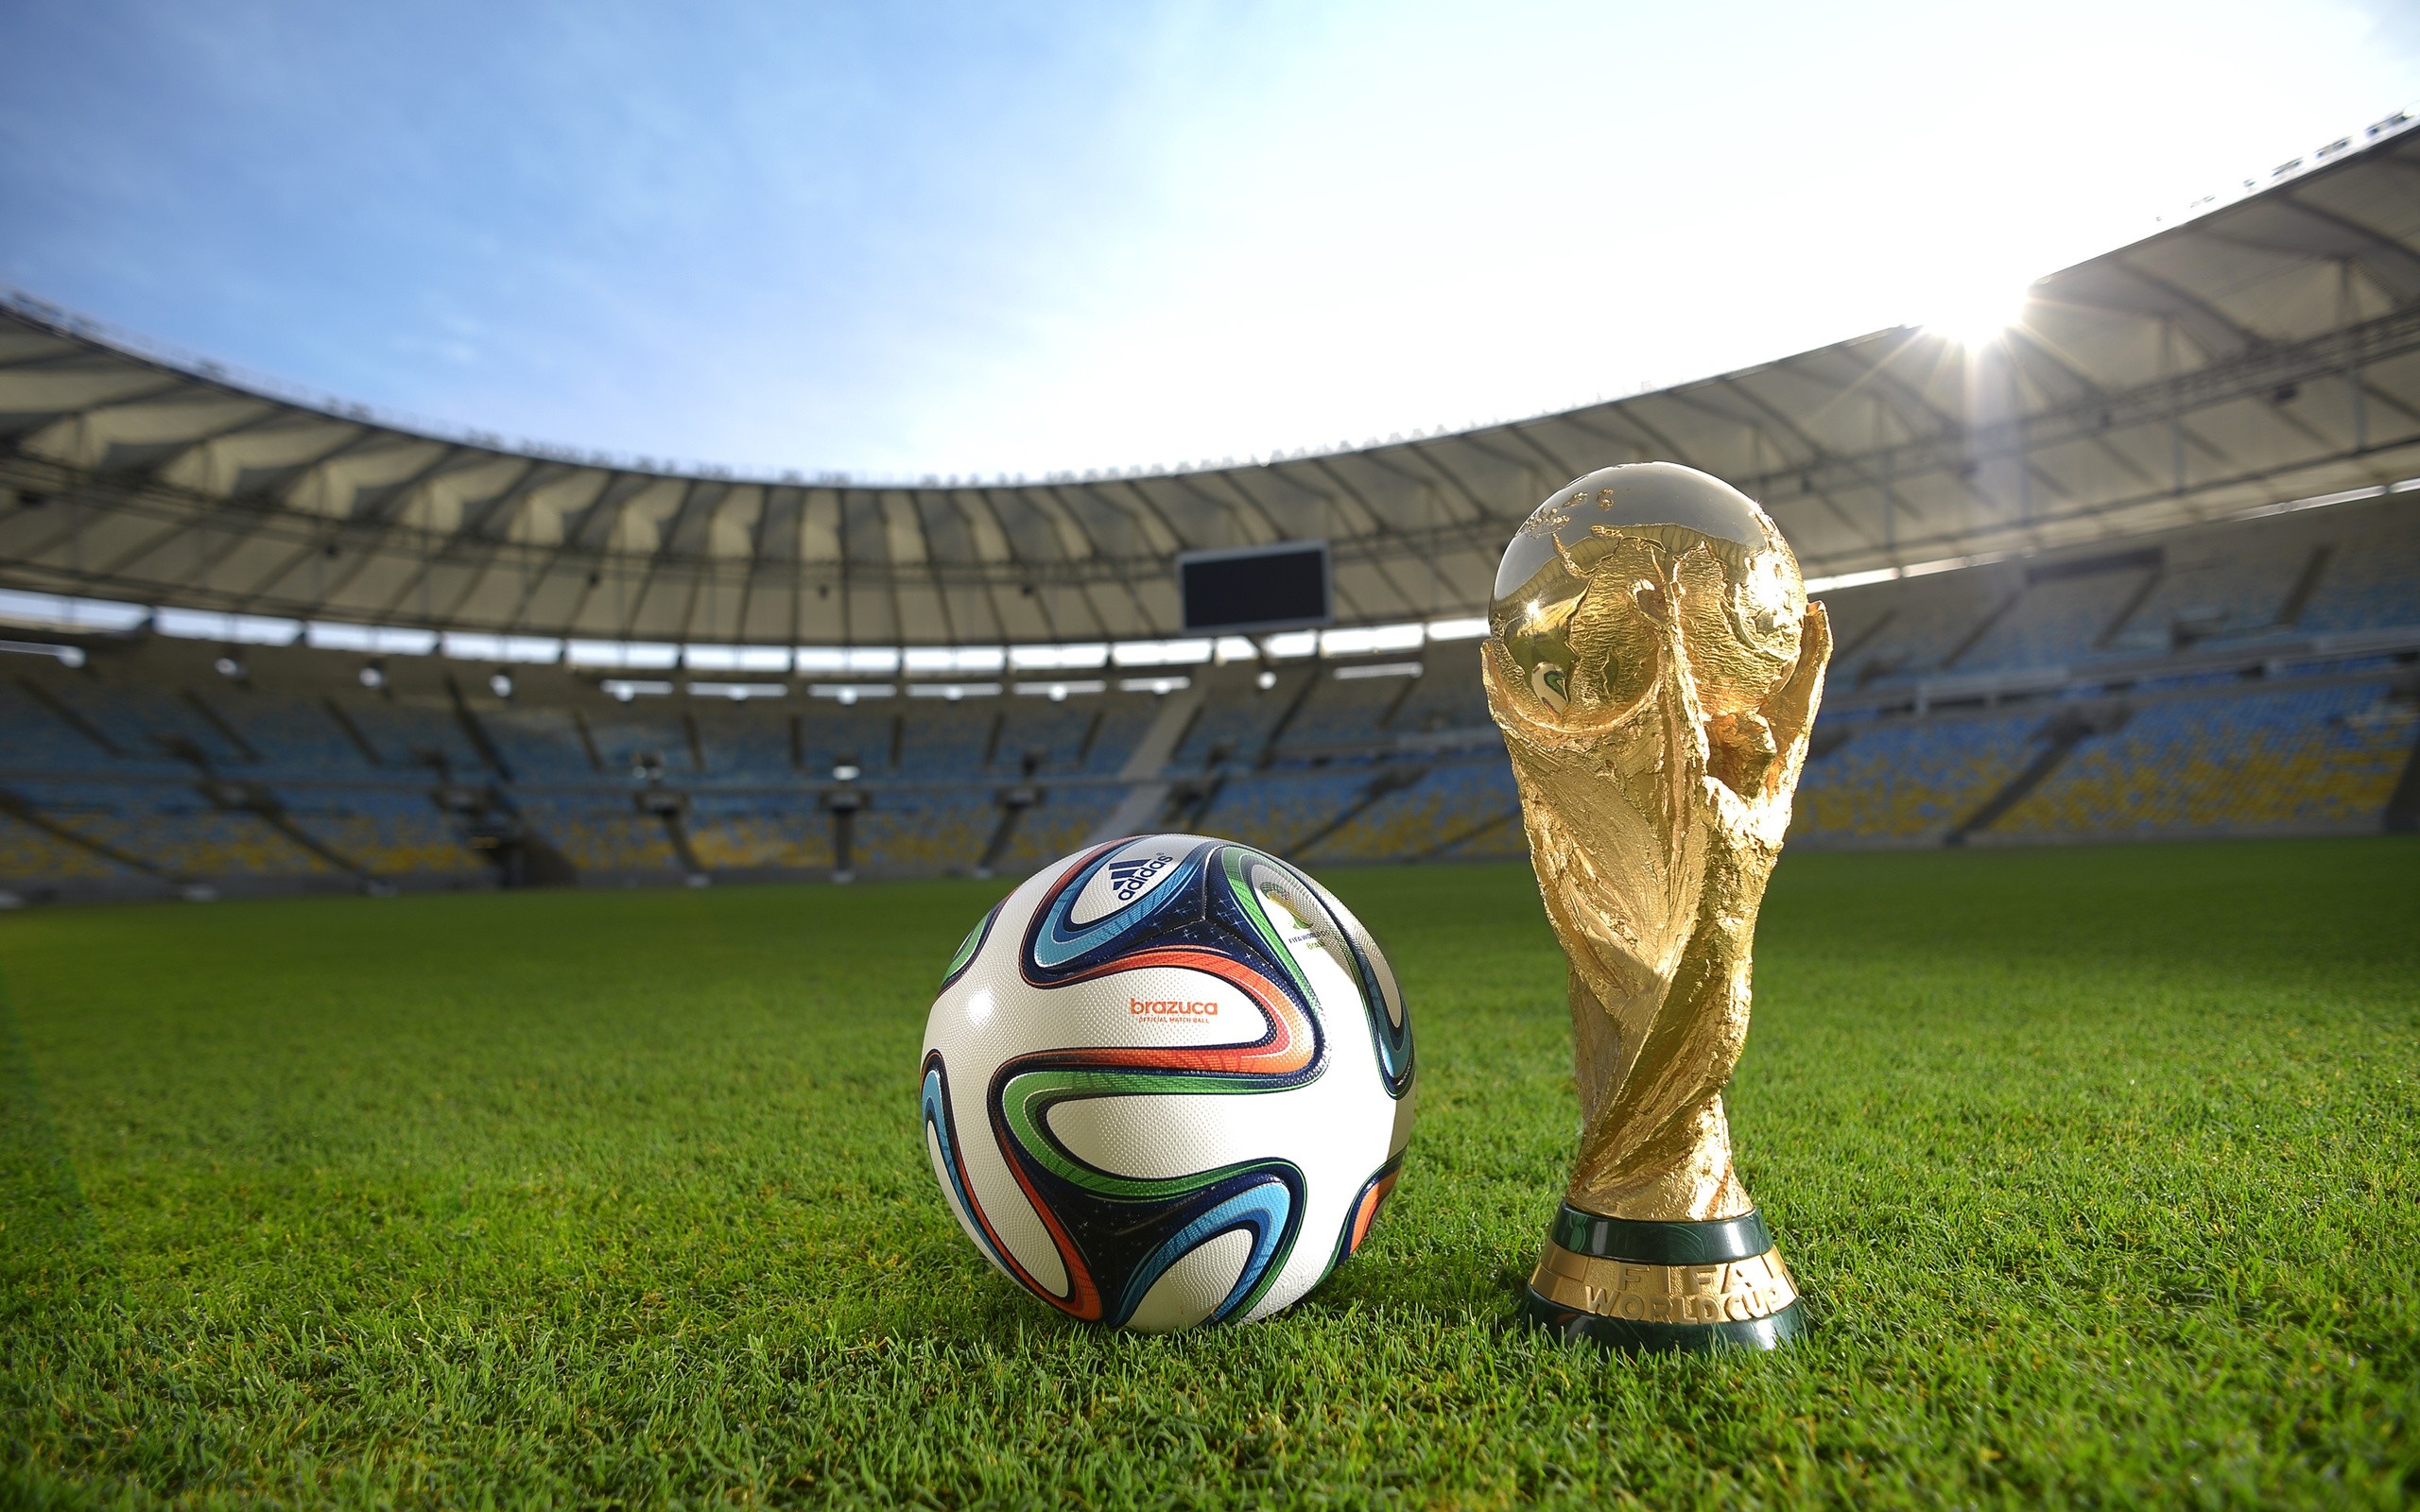 General 2560x1600 FIFA World Cup Brazil stadium soccer ball soccer ball sport